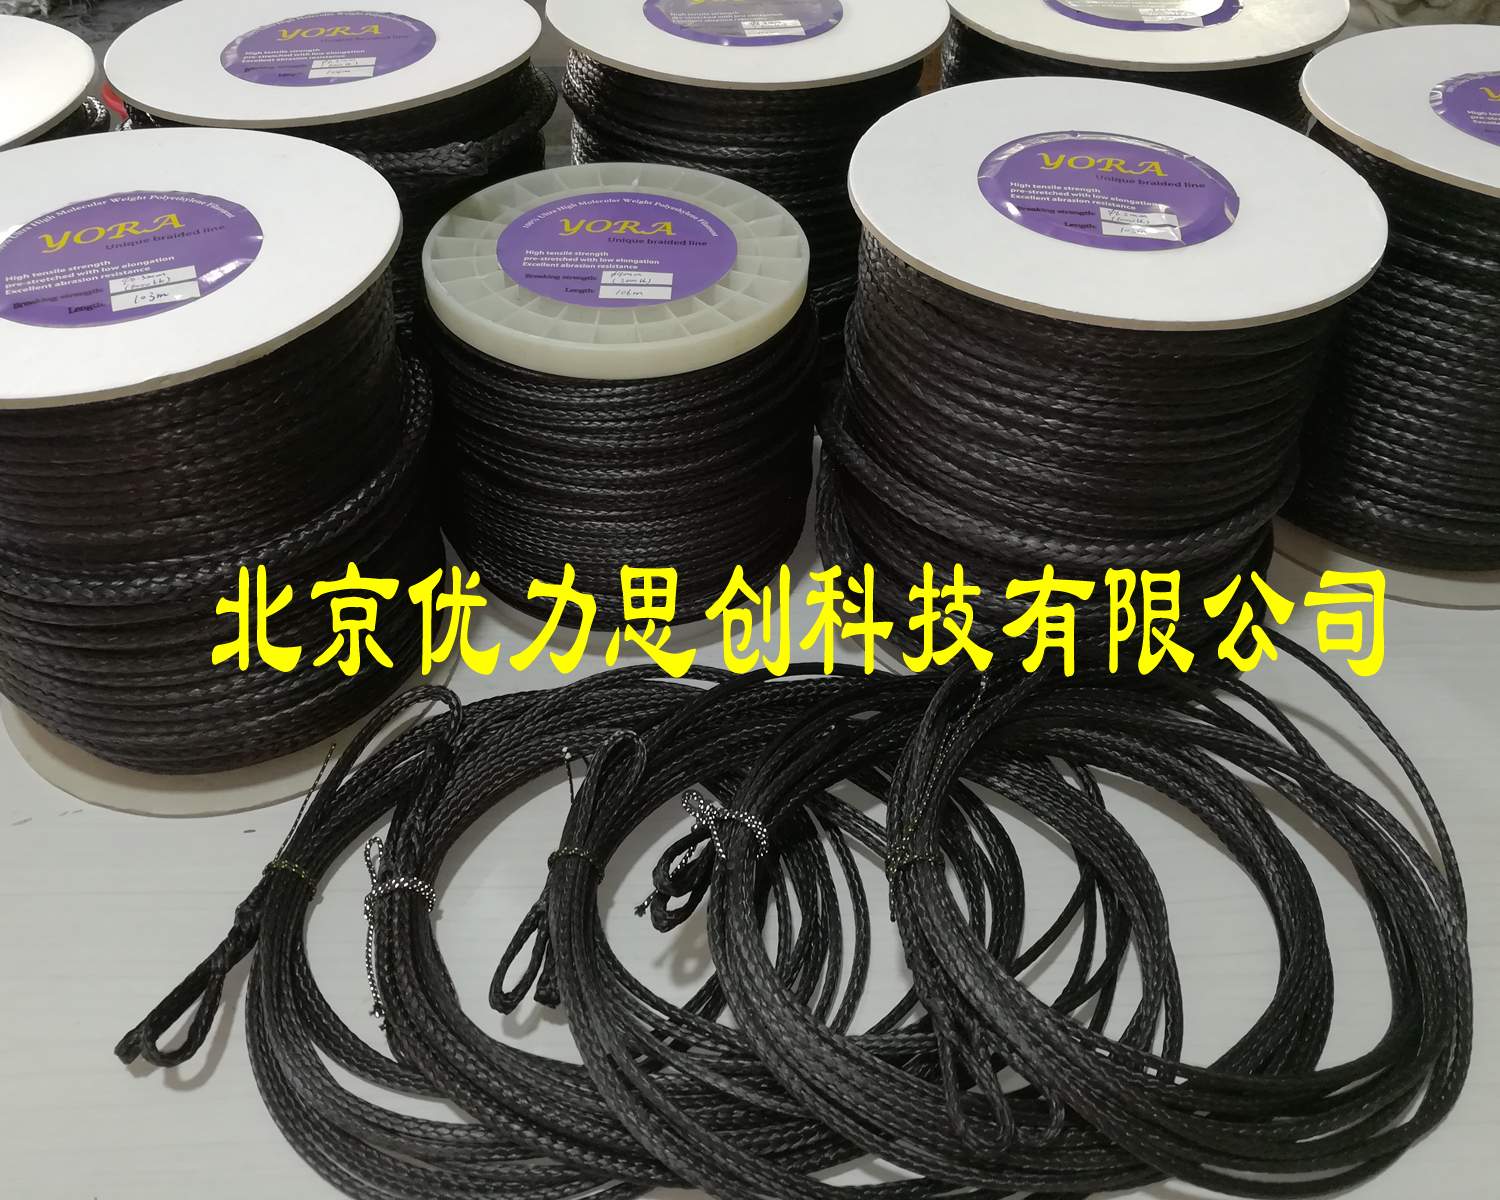 北京市威亚绳厂家厂家直销5mm威亚绳舞台特技动作防护绳大力马高分子绳